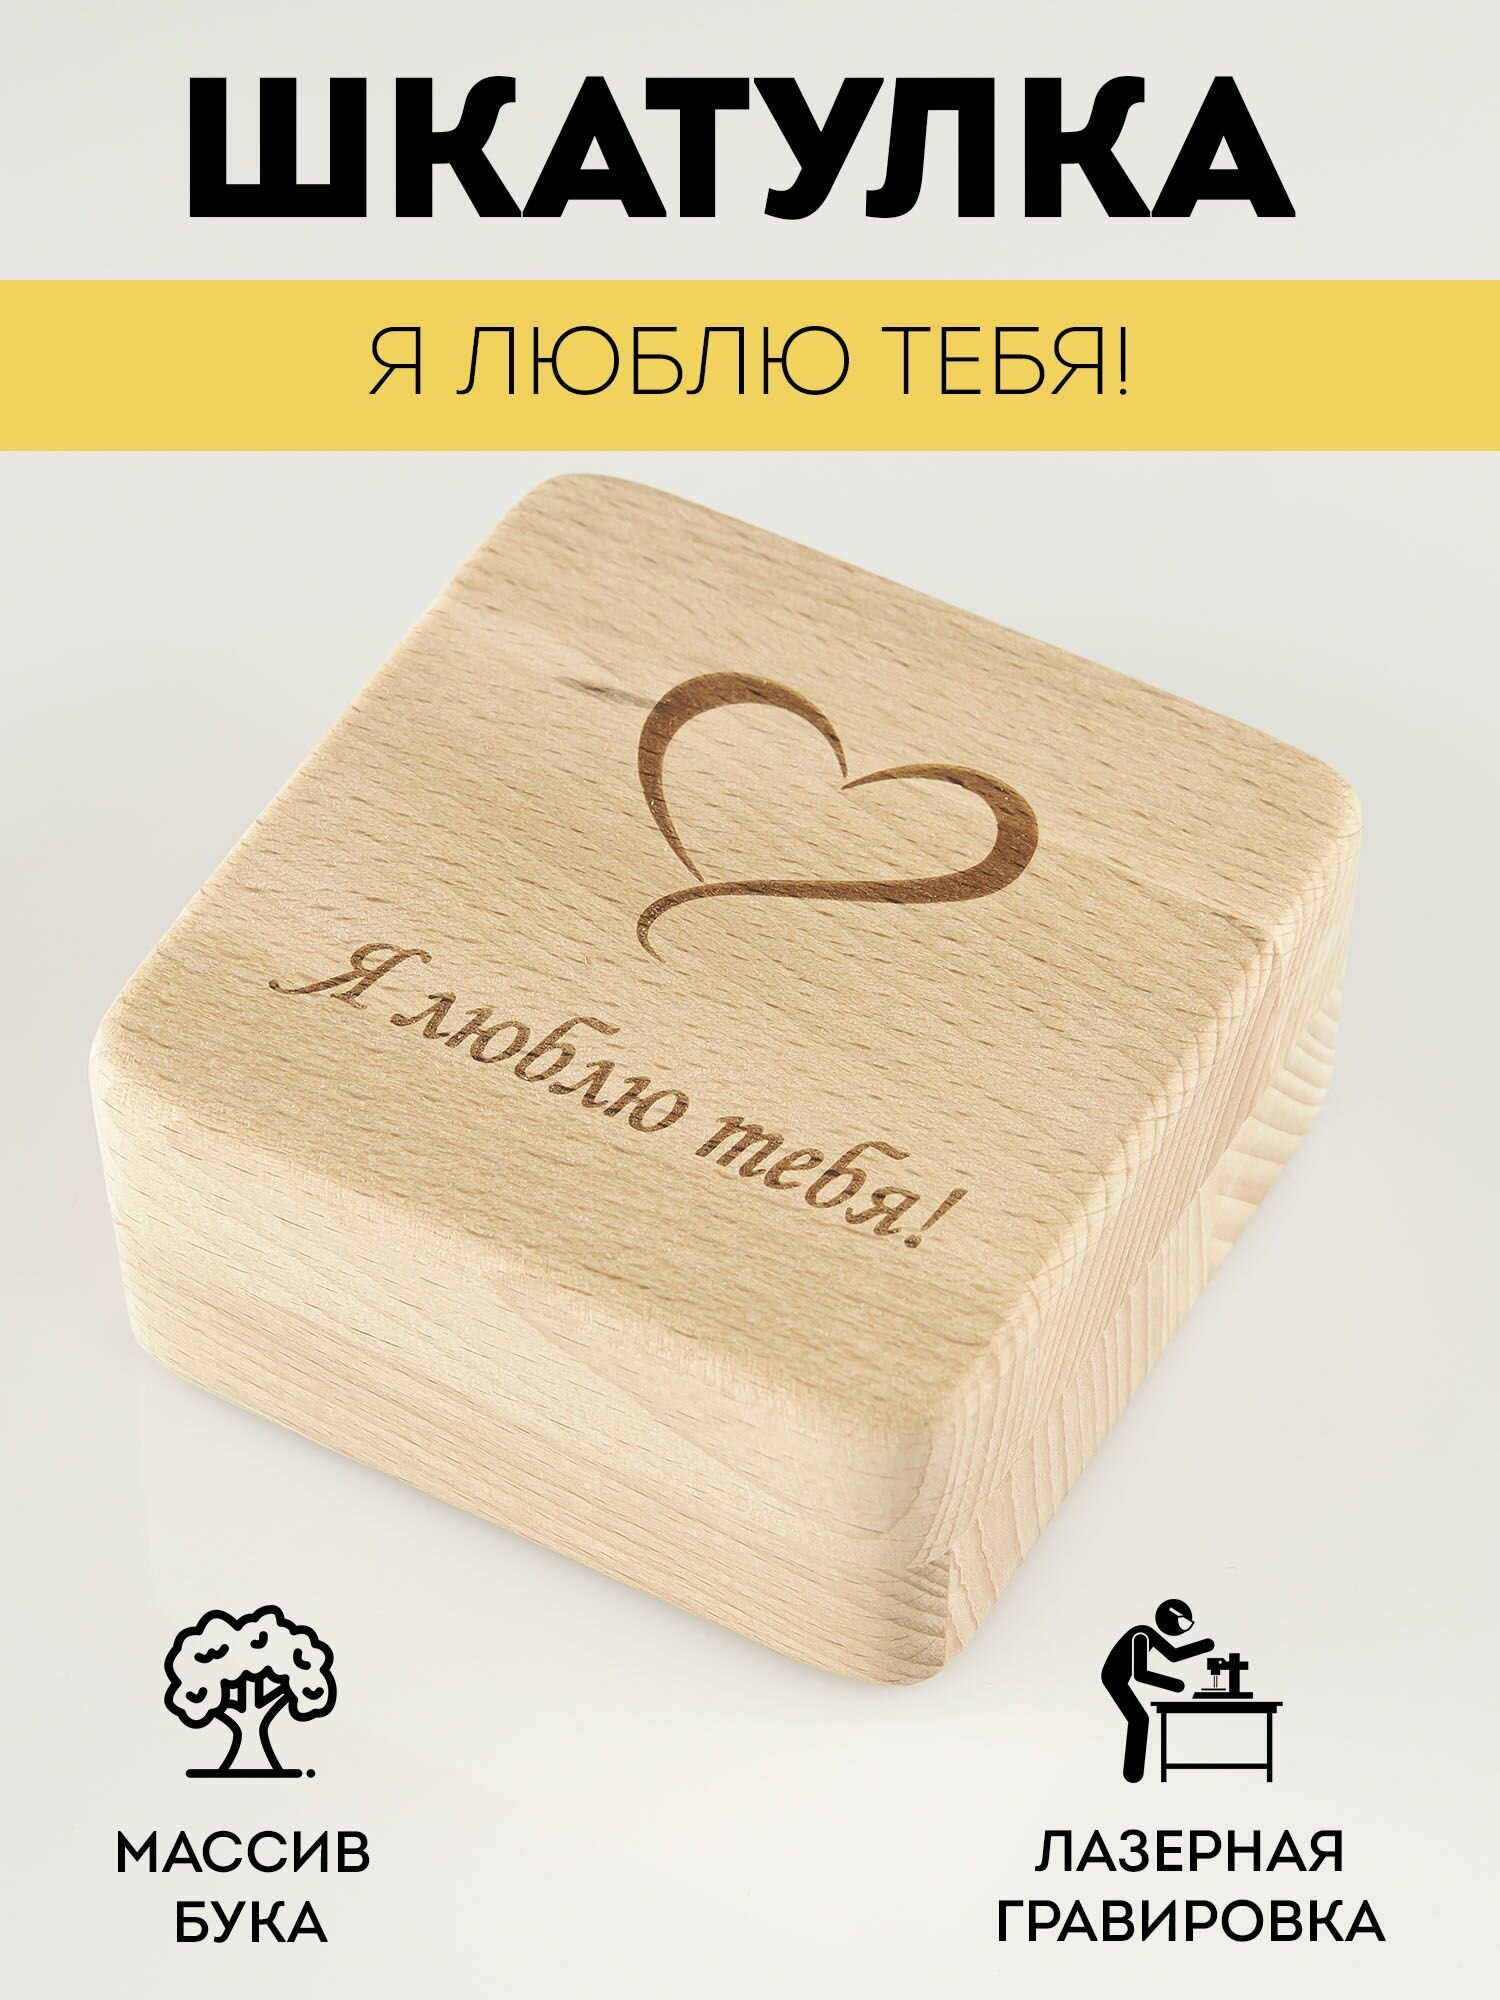 Шкатулка деревянная RiForm для подарков и бижутерии с гравировкой "Я люблю тебя!"